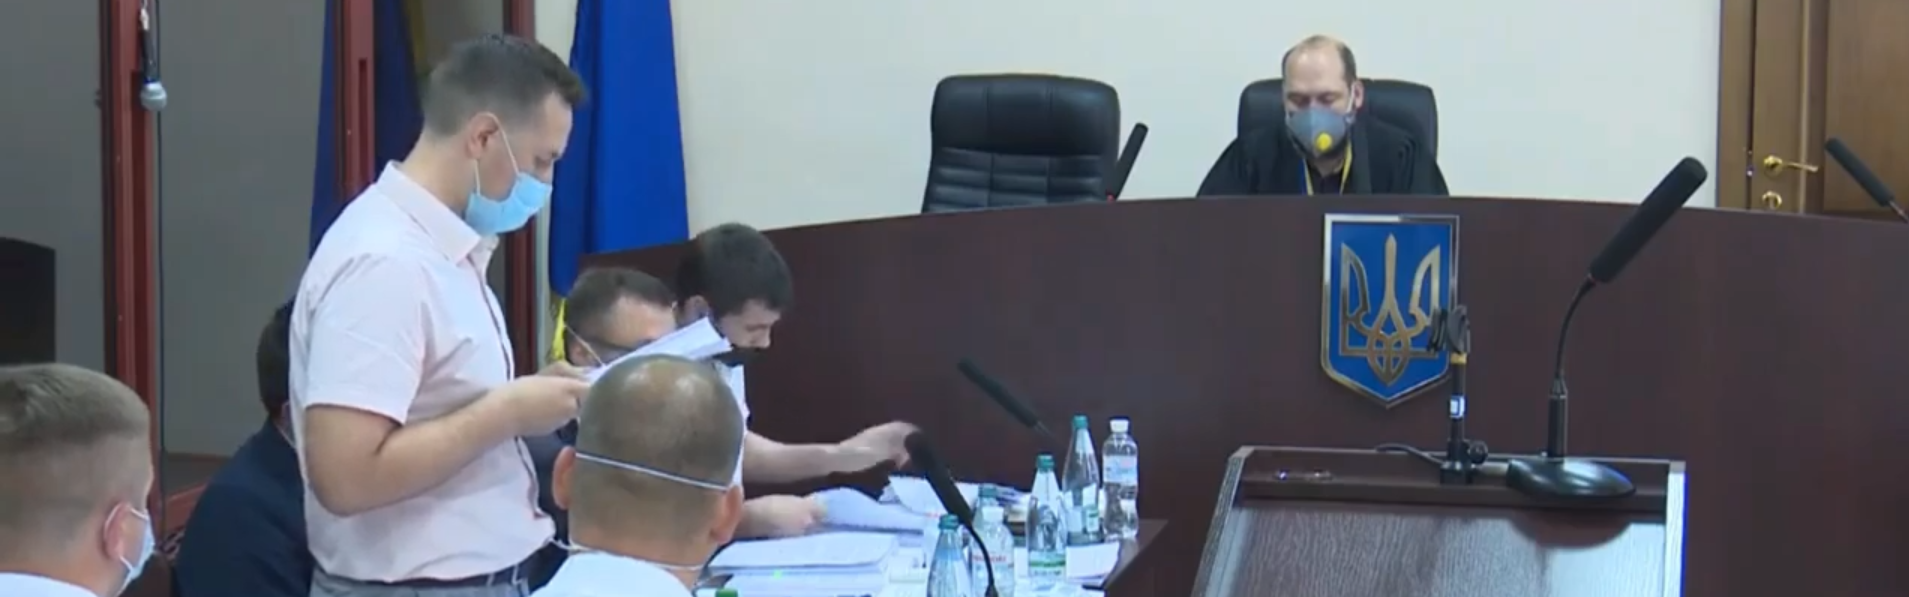 Скандал в суде над Порошенко: депутаты от "ЕС" кричат "Ганьба!" в адрес стороны обвинения 